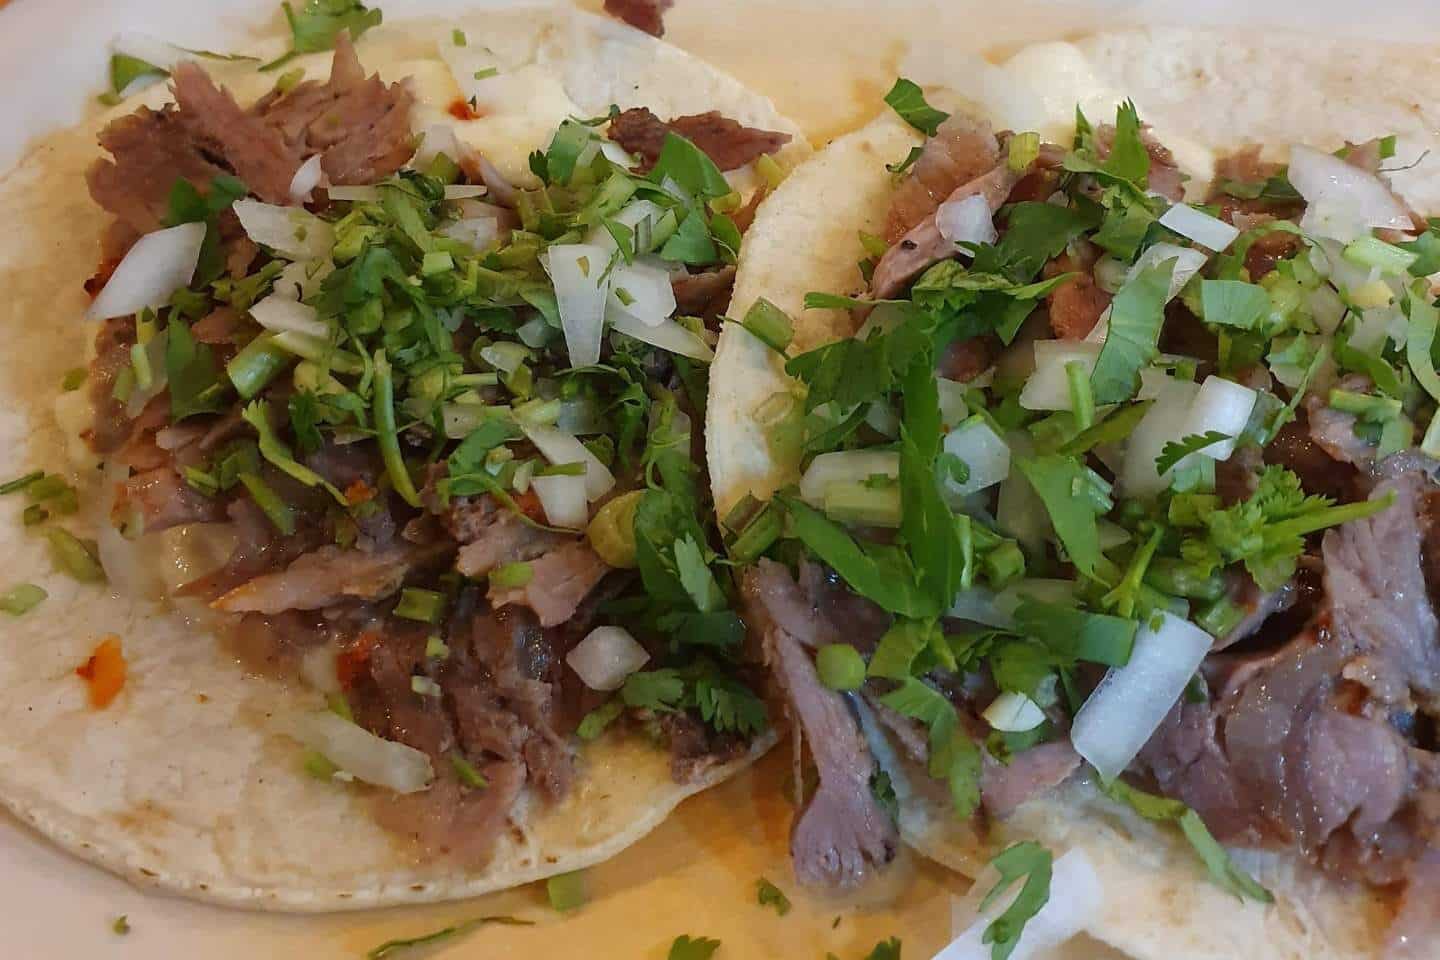 Tacos de Res (beef tacos)